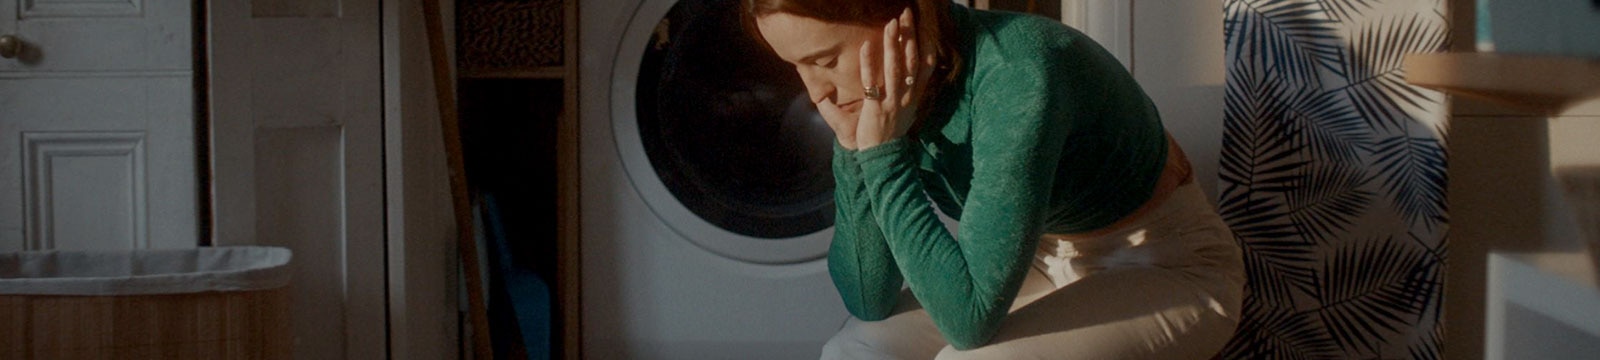 Wyczerpana kobieta siedzi samotnie w pralni